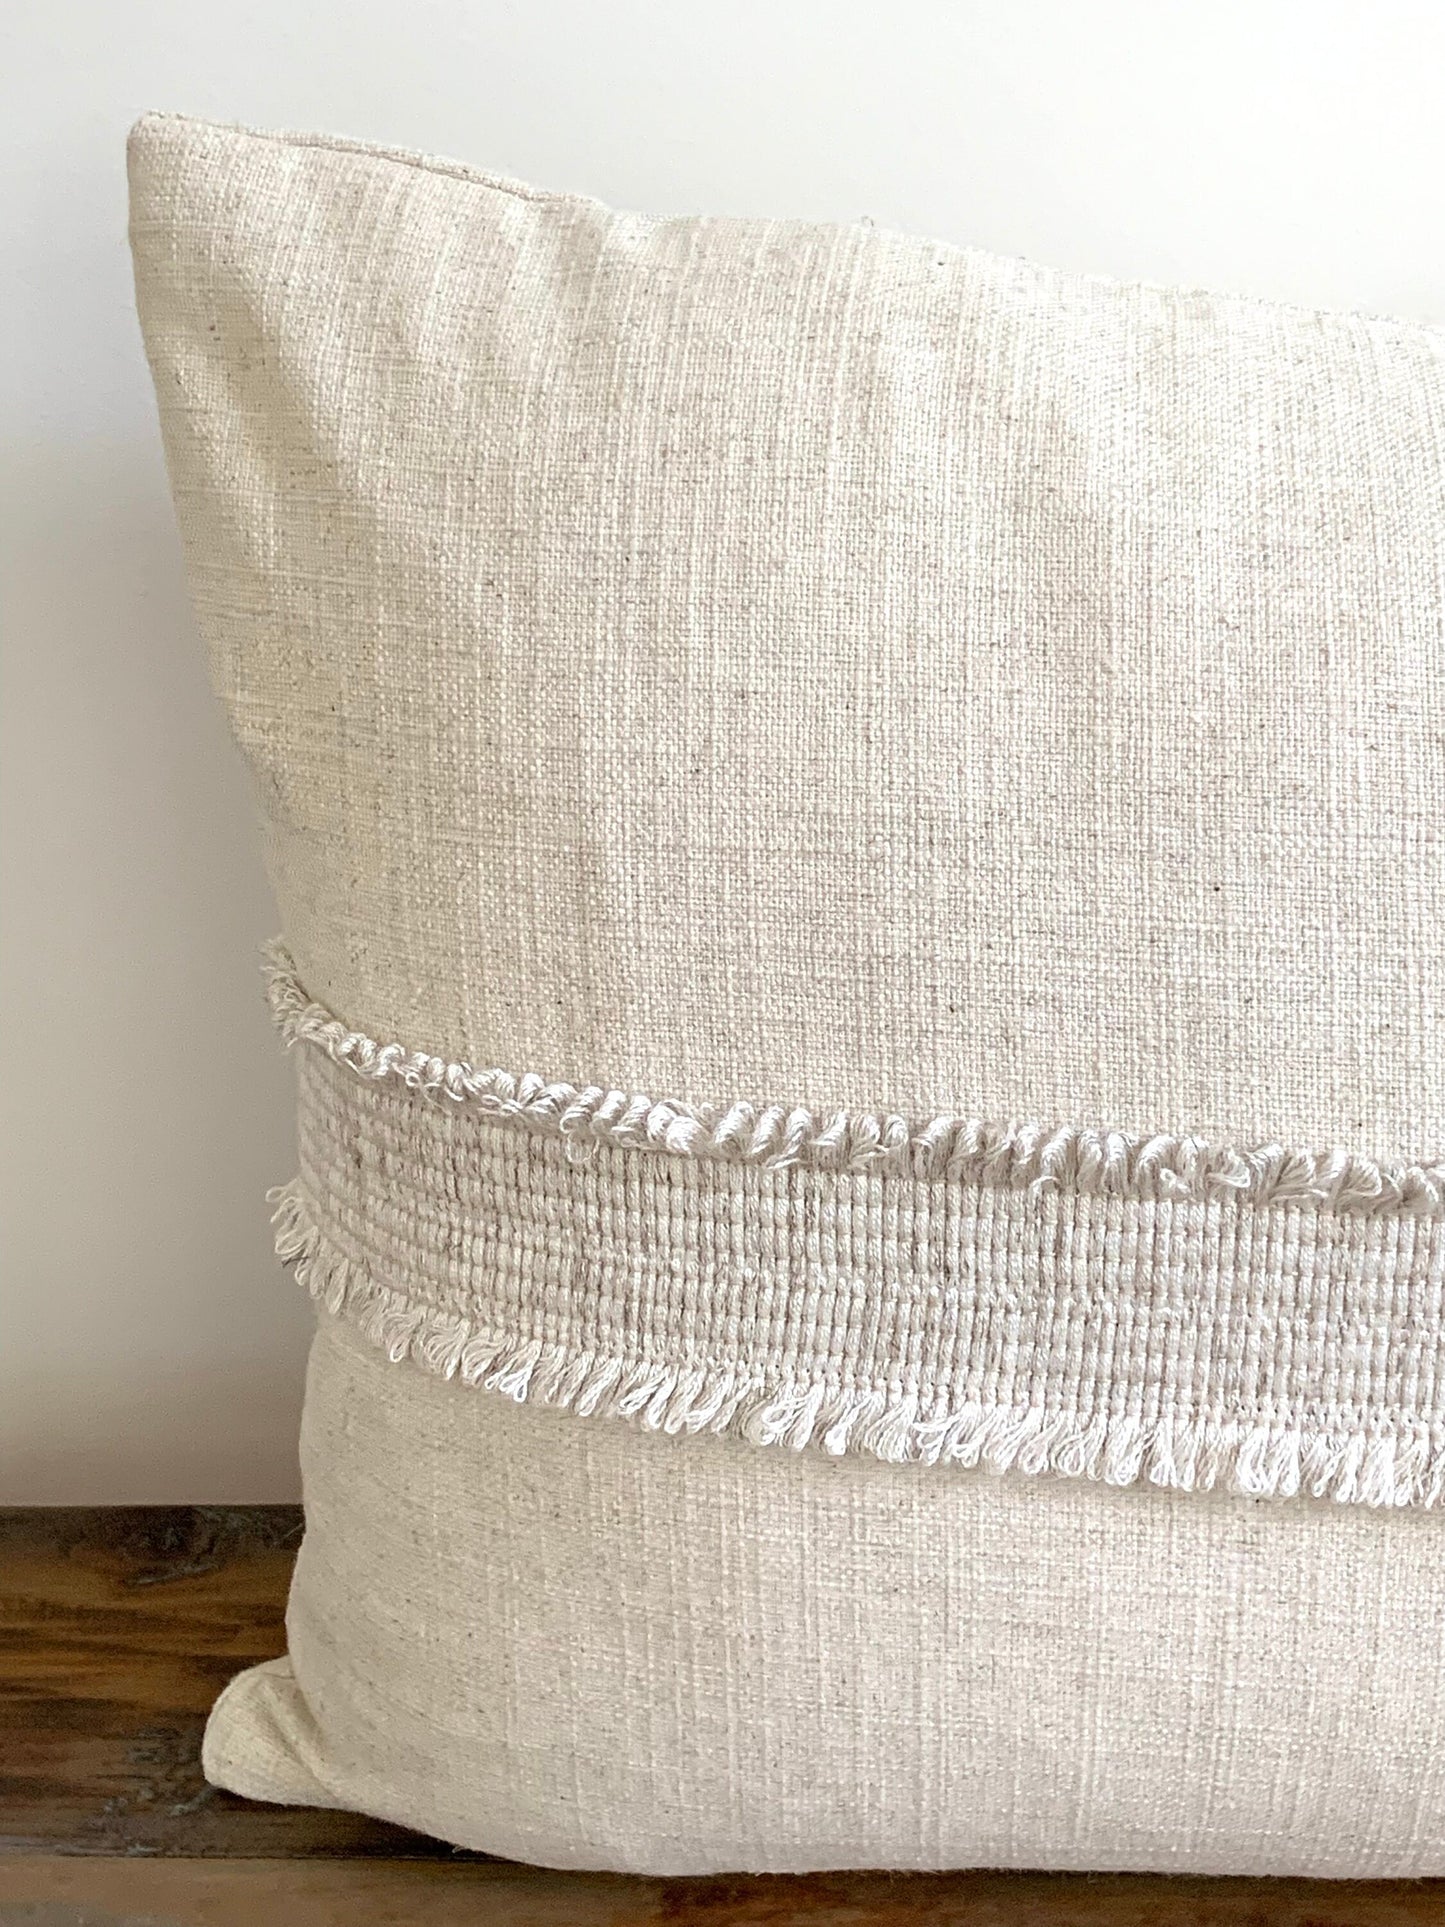 14 x 20 Linen lumbar pillow with decorative tape